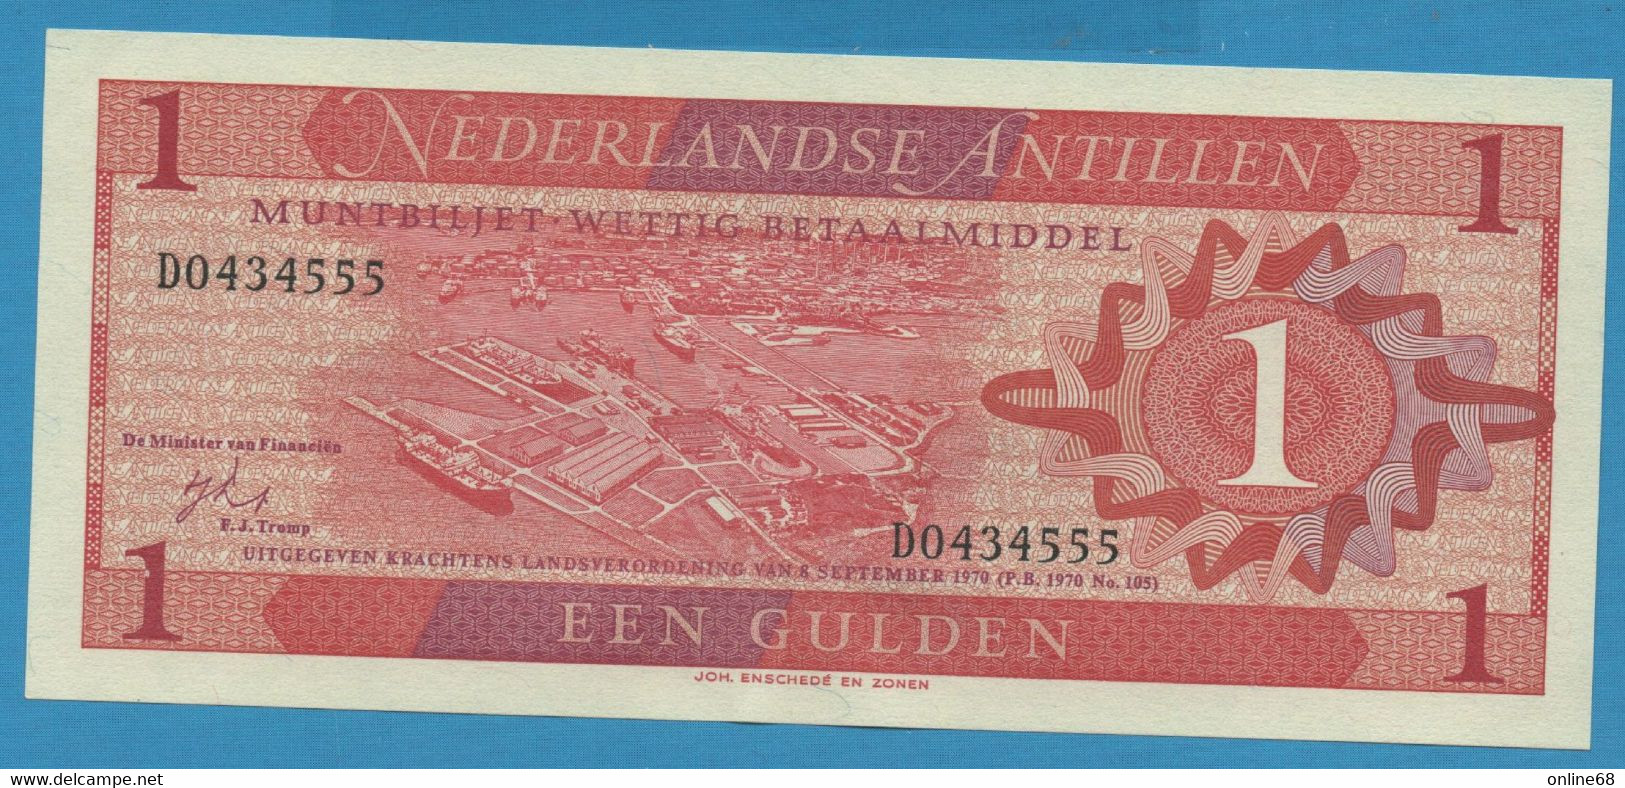 NEDERLANDSE ANTILLEN 1 GULDEN 08.09.1970 # D0434555 P# 20 Willemstad Curaçao - Netherlands Antilles (...-1986)